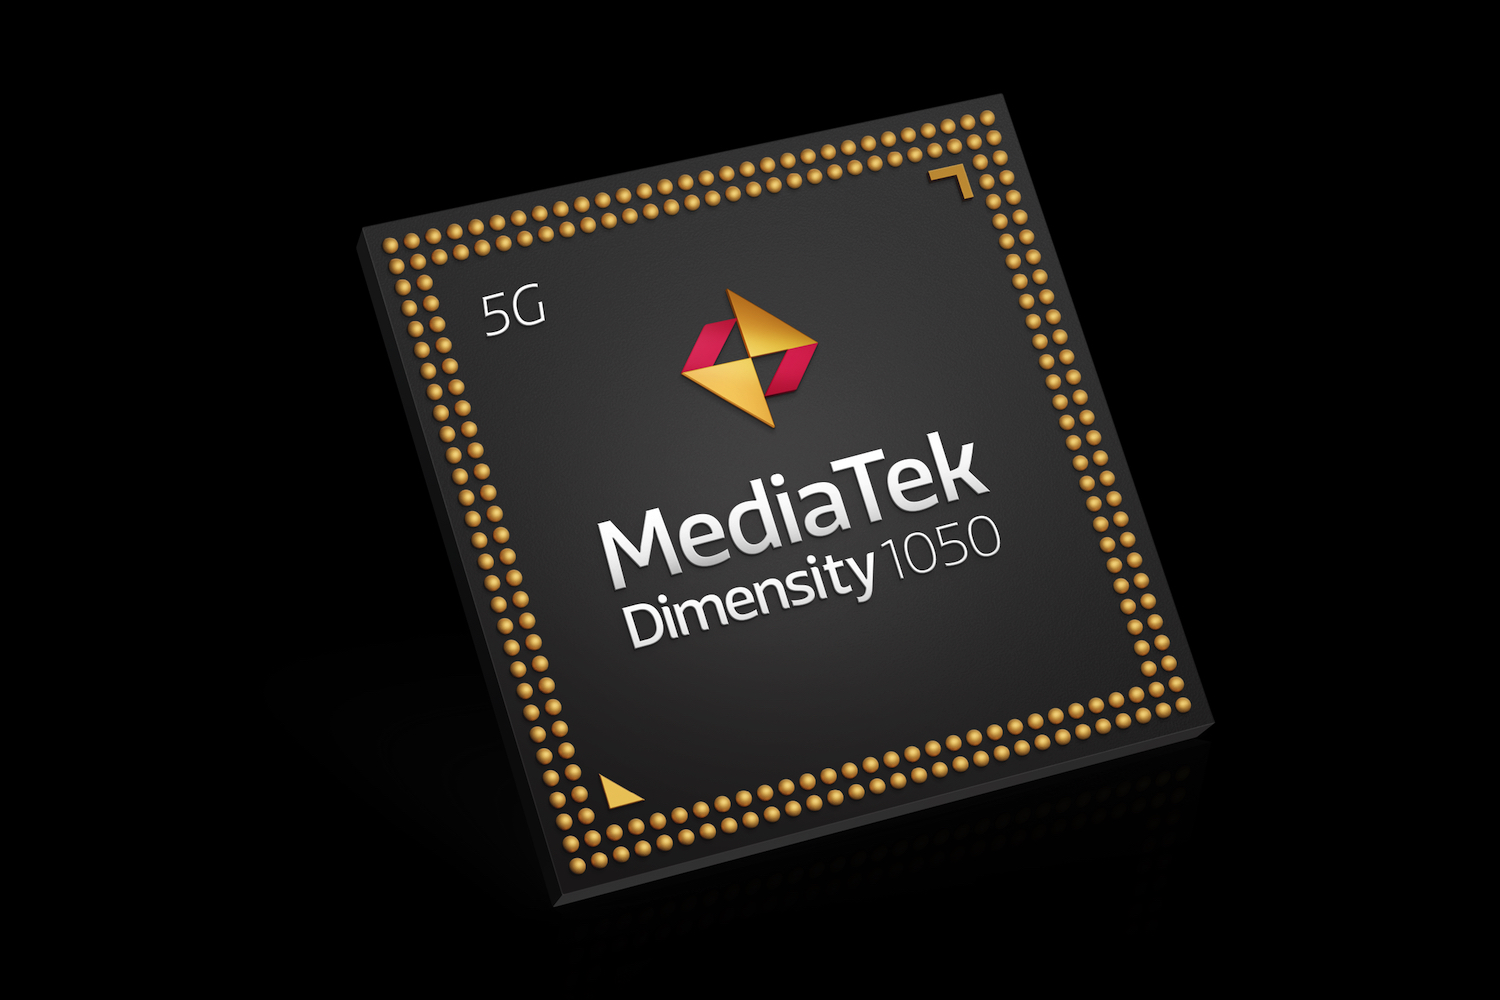 MediaTek le da un impulso a mmWave 5G con un chip Dimensity 1050.